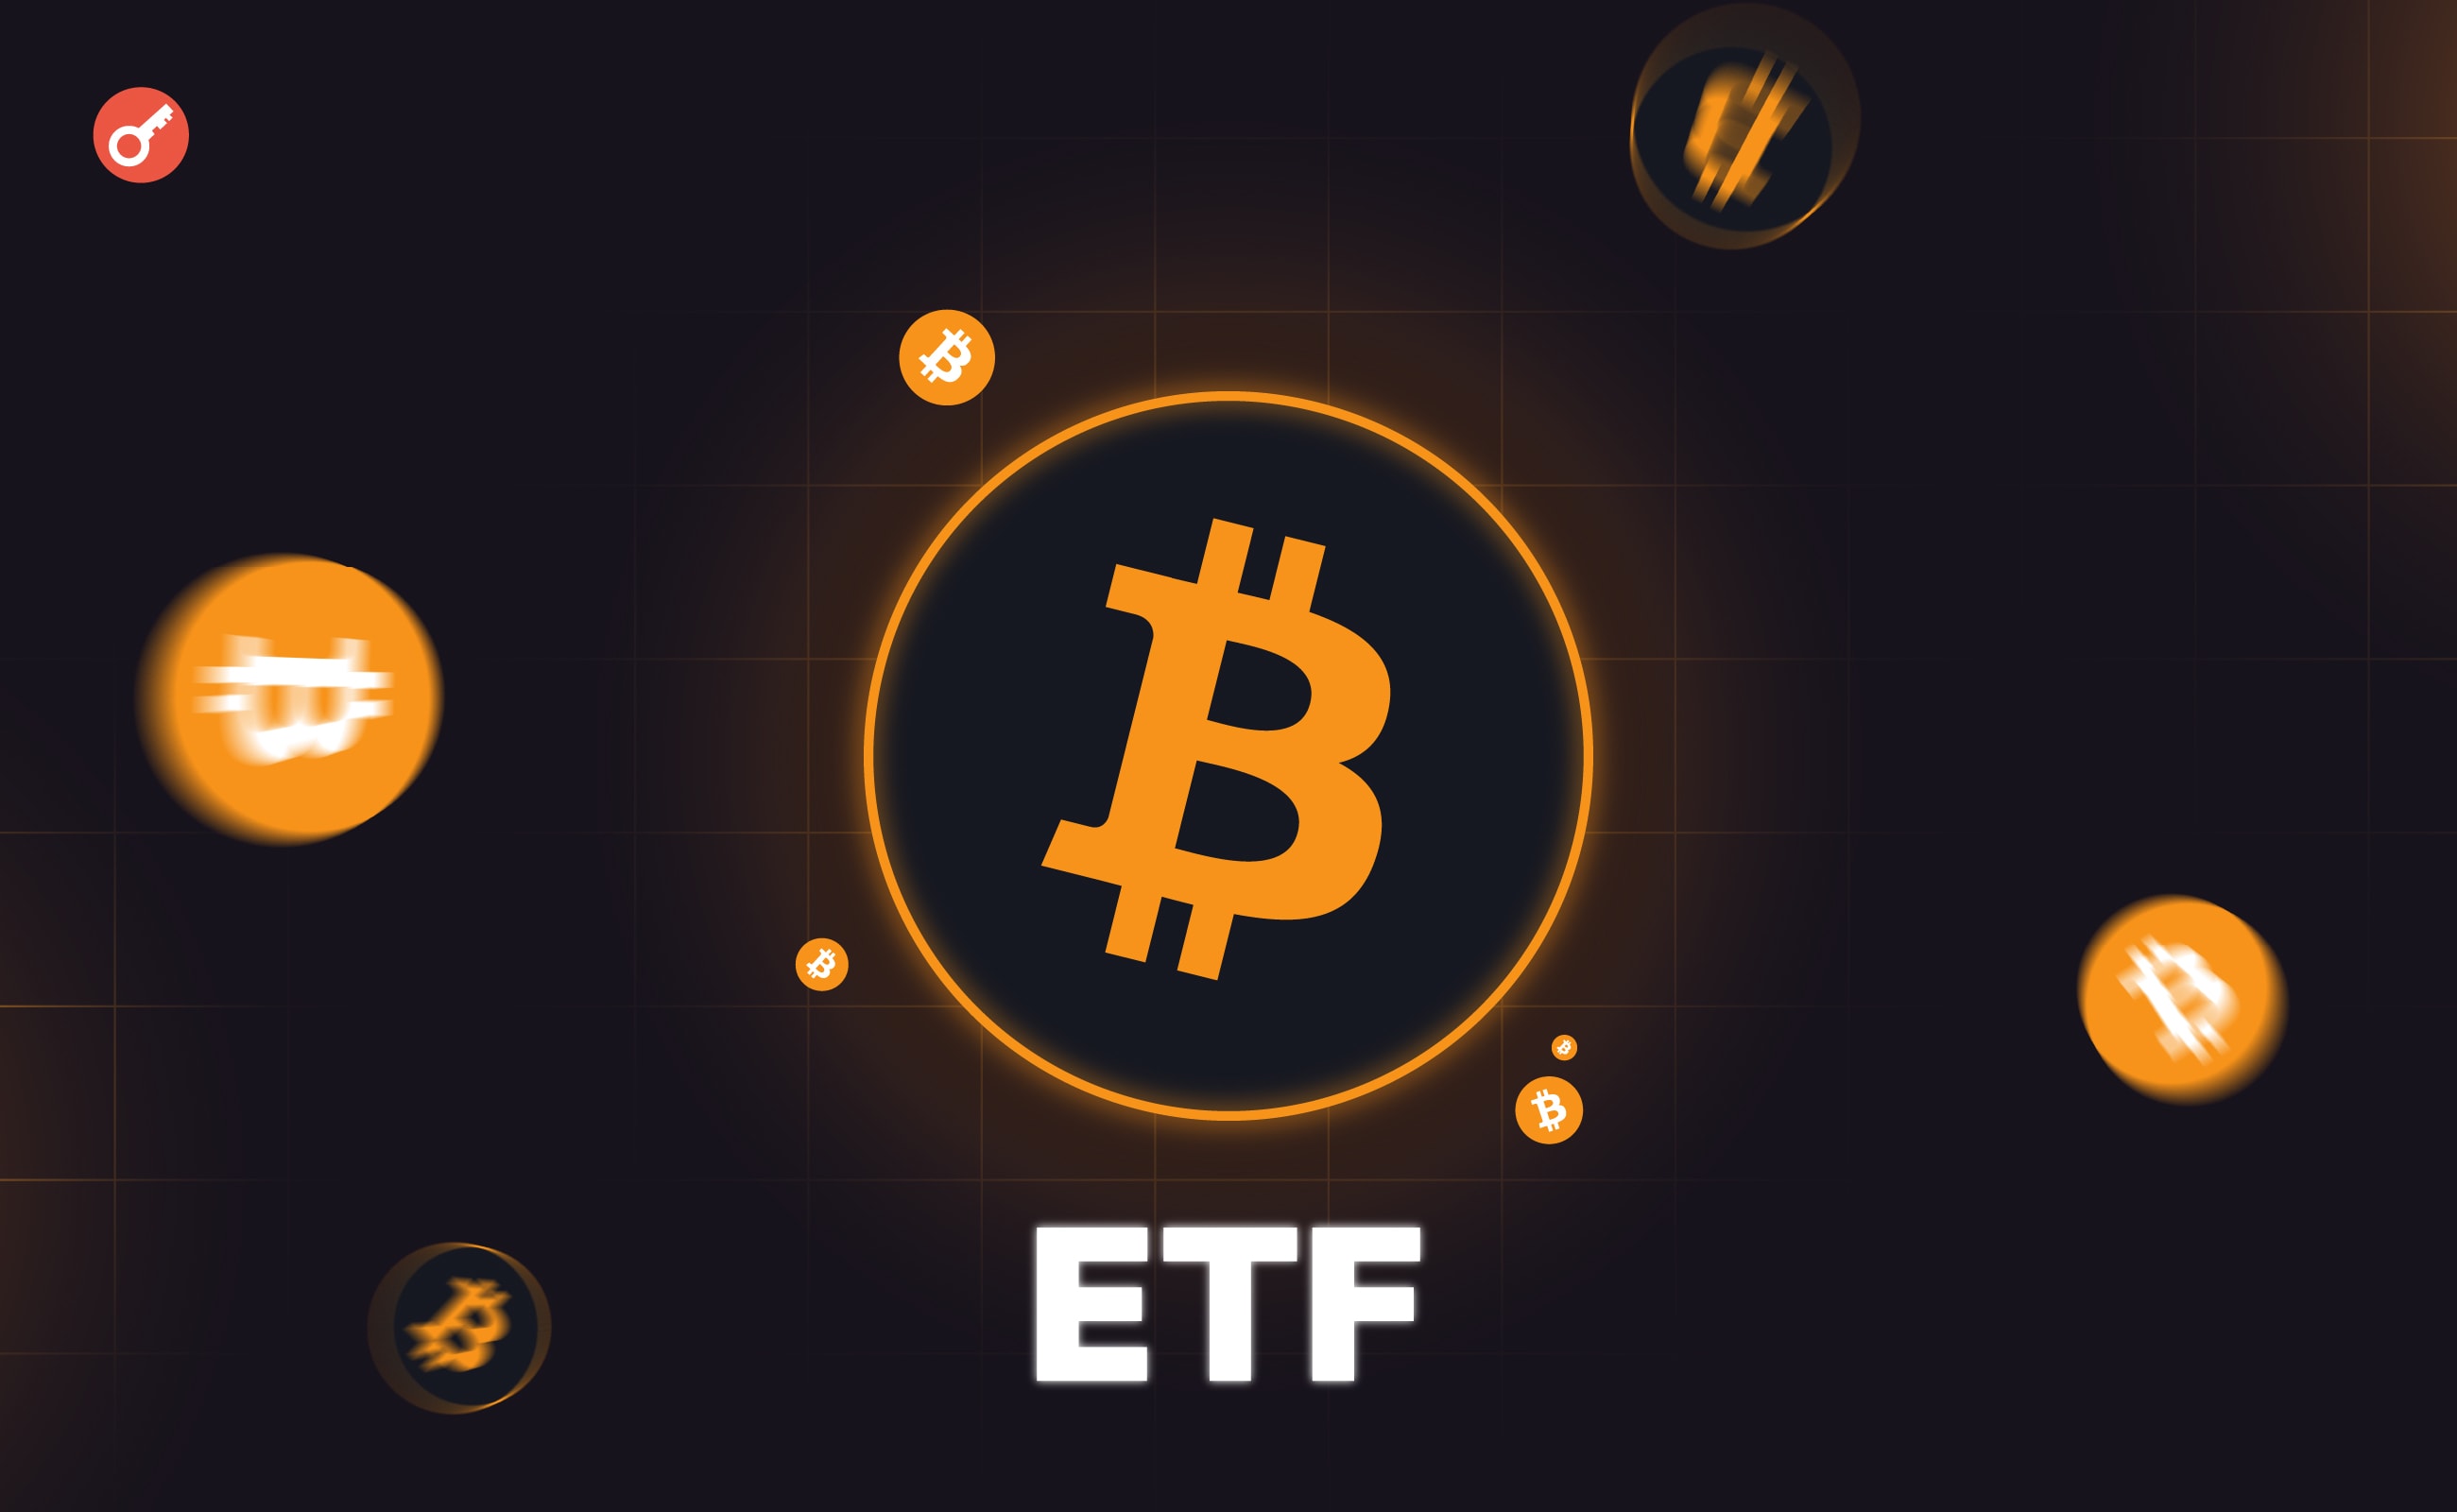 Gigant inwestycyjny Hightower zainwestował 68 mln USD w sześć funduszy bitcoin ETF. Główny kolaż wiadomości.